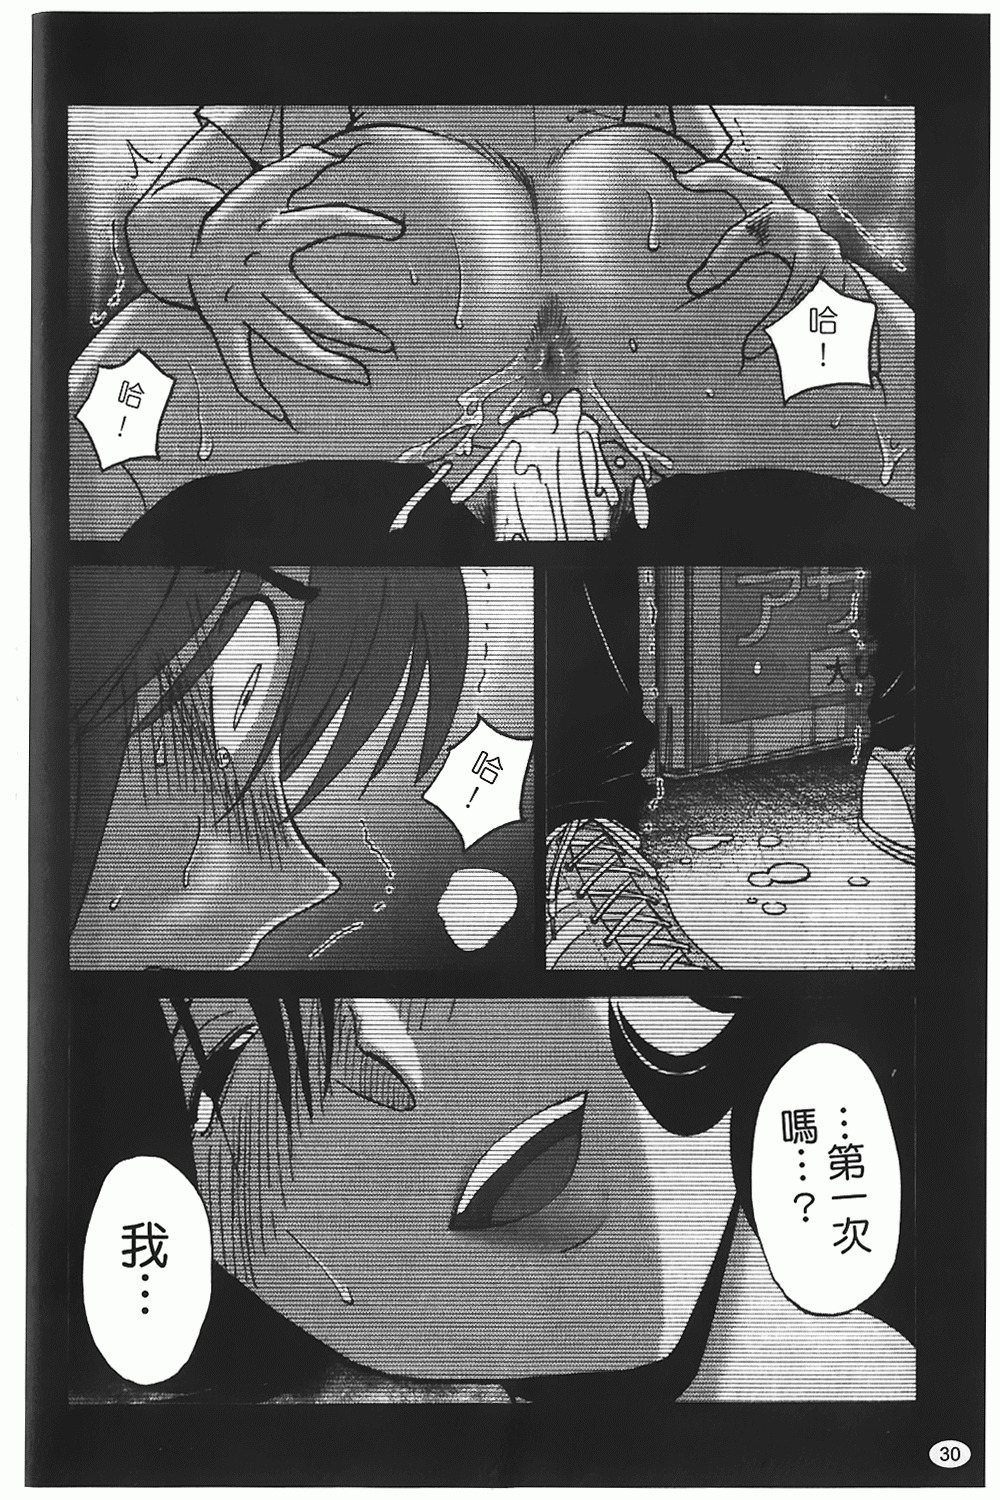 [TsuyaTsuya] Monokage no Iris 1 | 陰影中的伊利斯 1 [Chinese] page 27 full